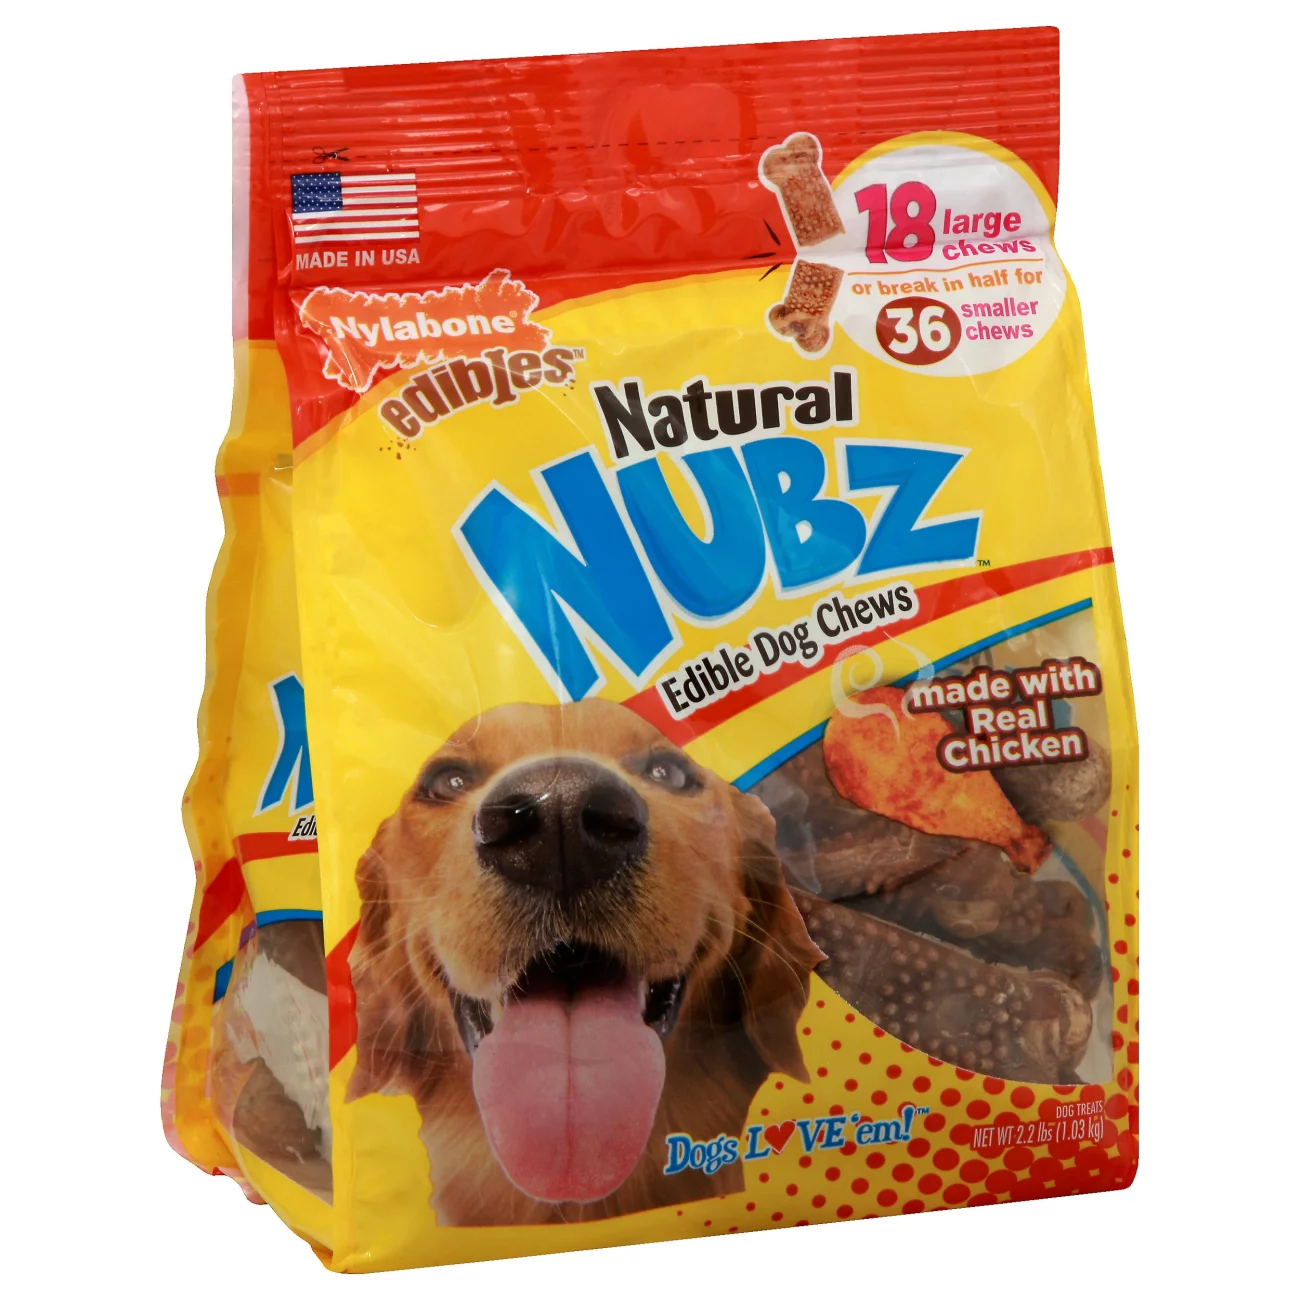 nubz dog treats 